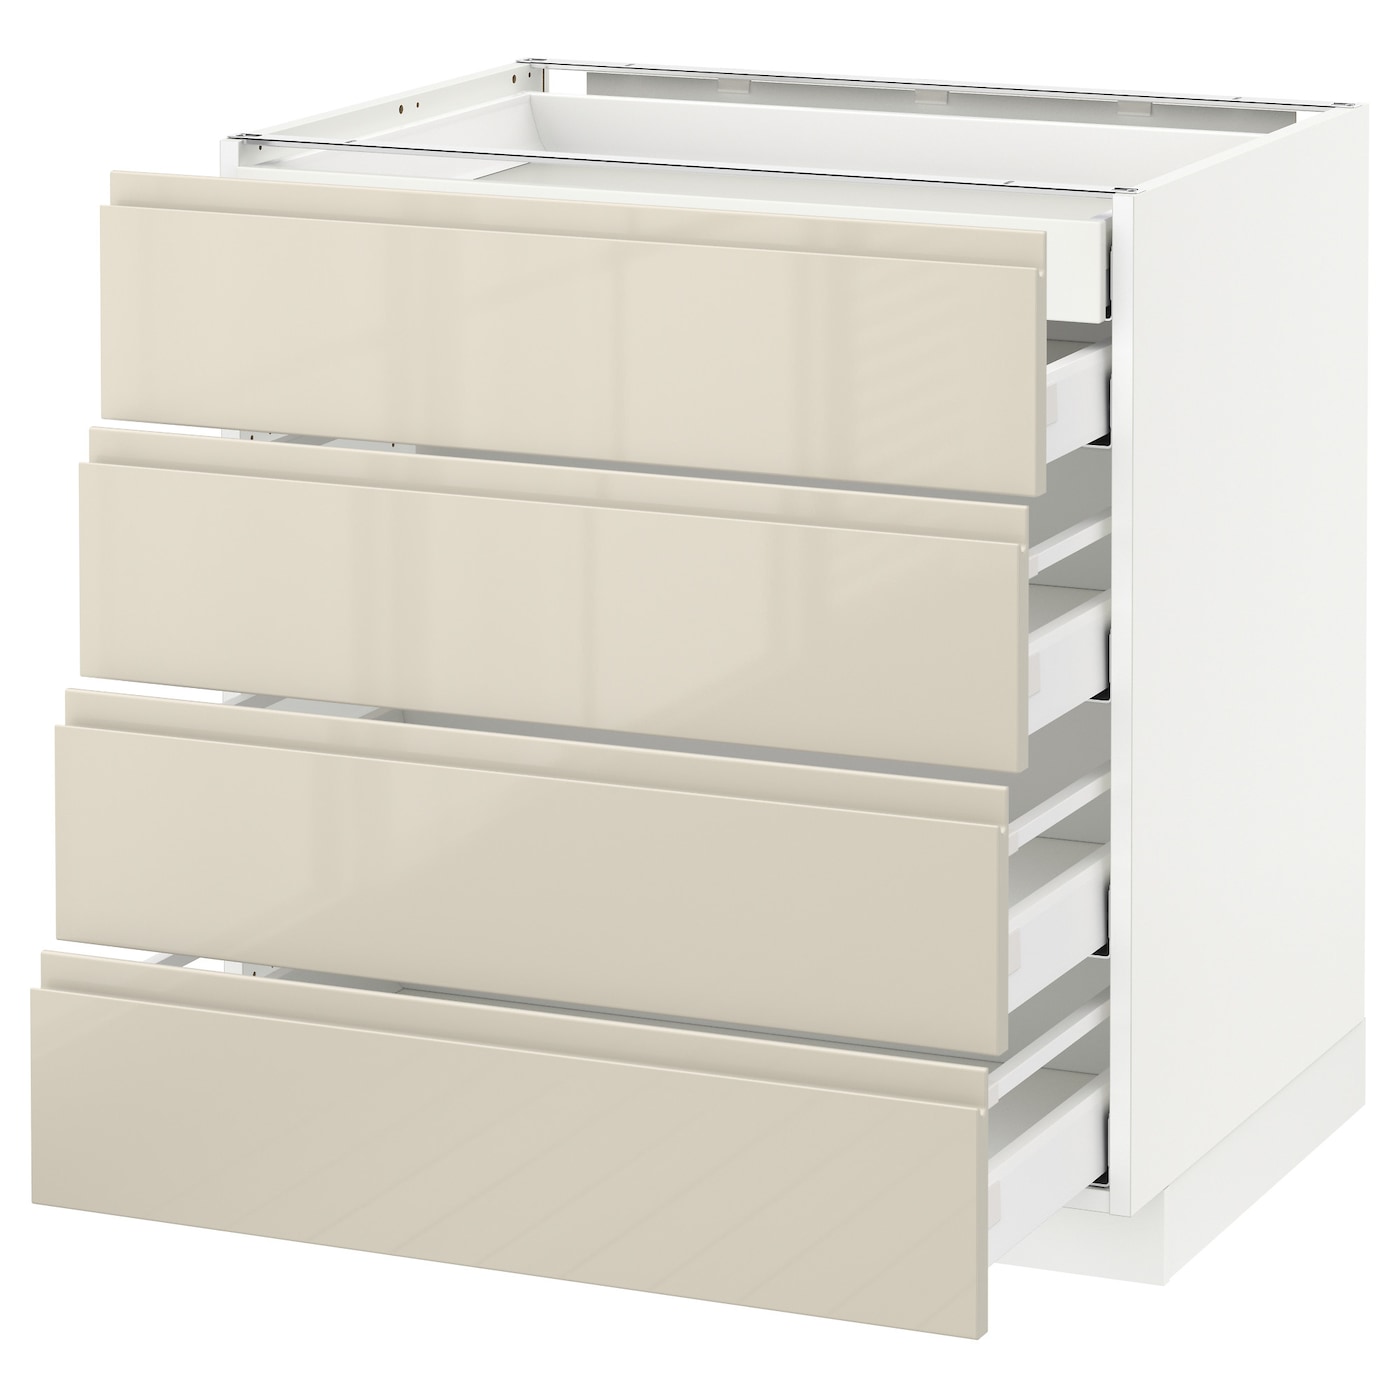 Напольный кухонный шкаф  - IKEA METOD MAXIMERA, 88x62,1x80см, белый/бежевый, МЕТОД МАКСИМЕРА ИКЕА